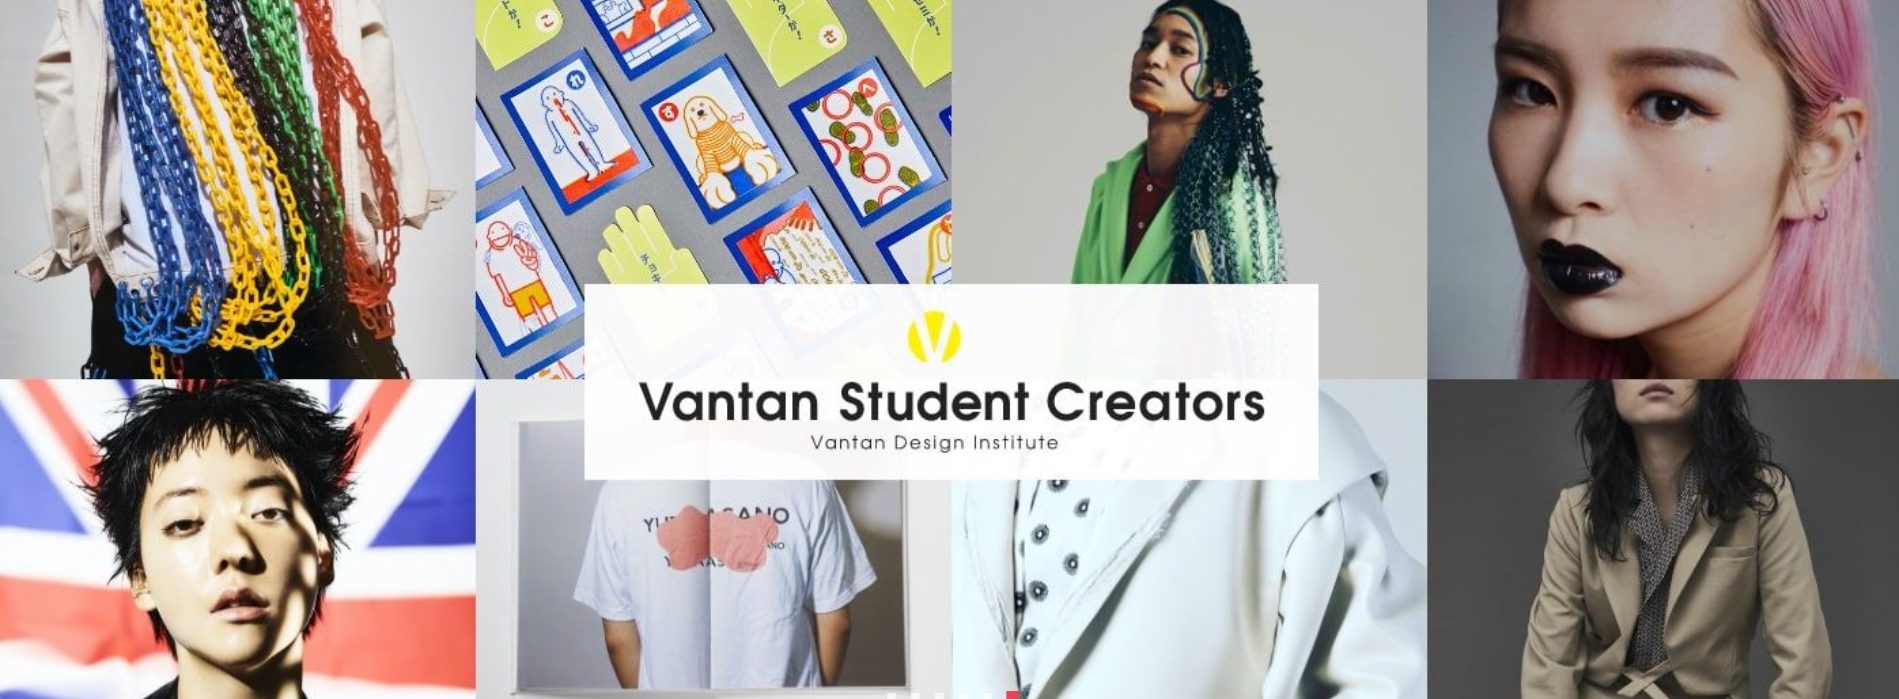 VANTAN STUDENT CREATORS